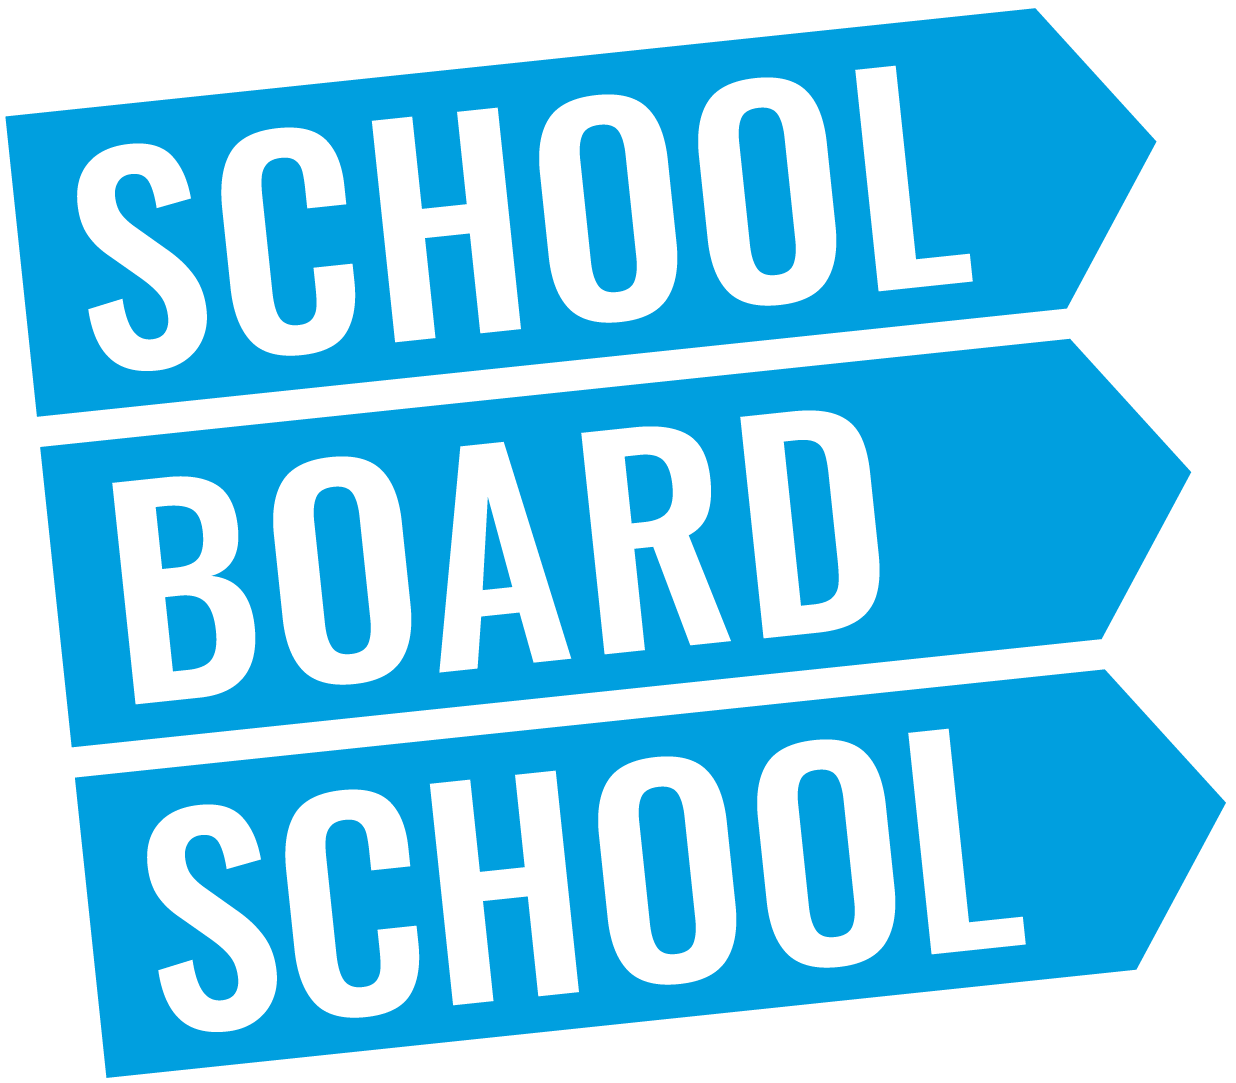 School Board School